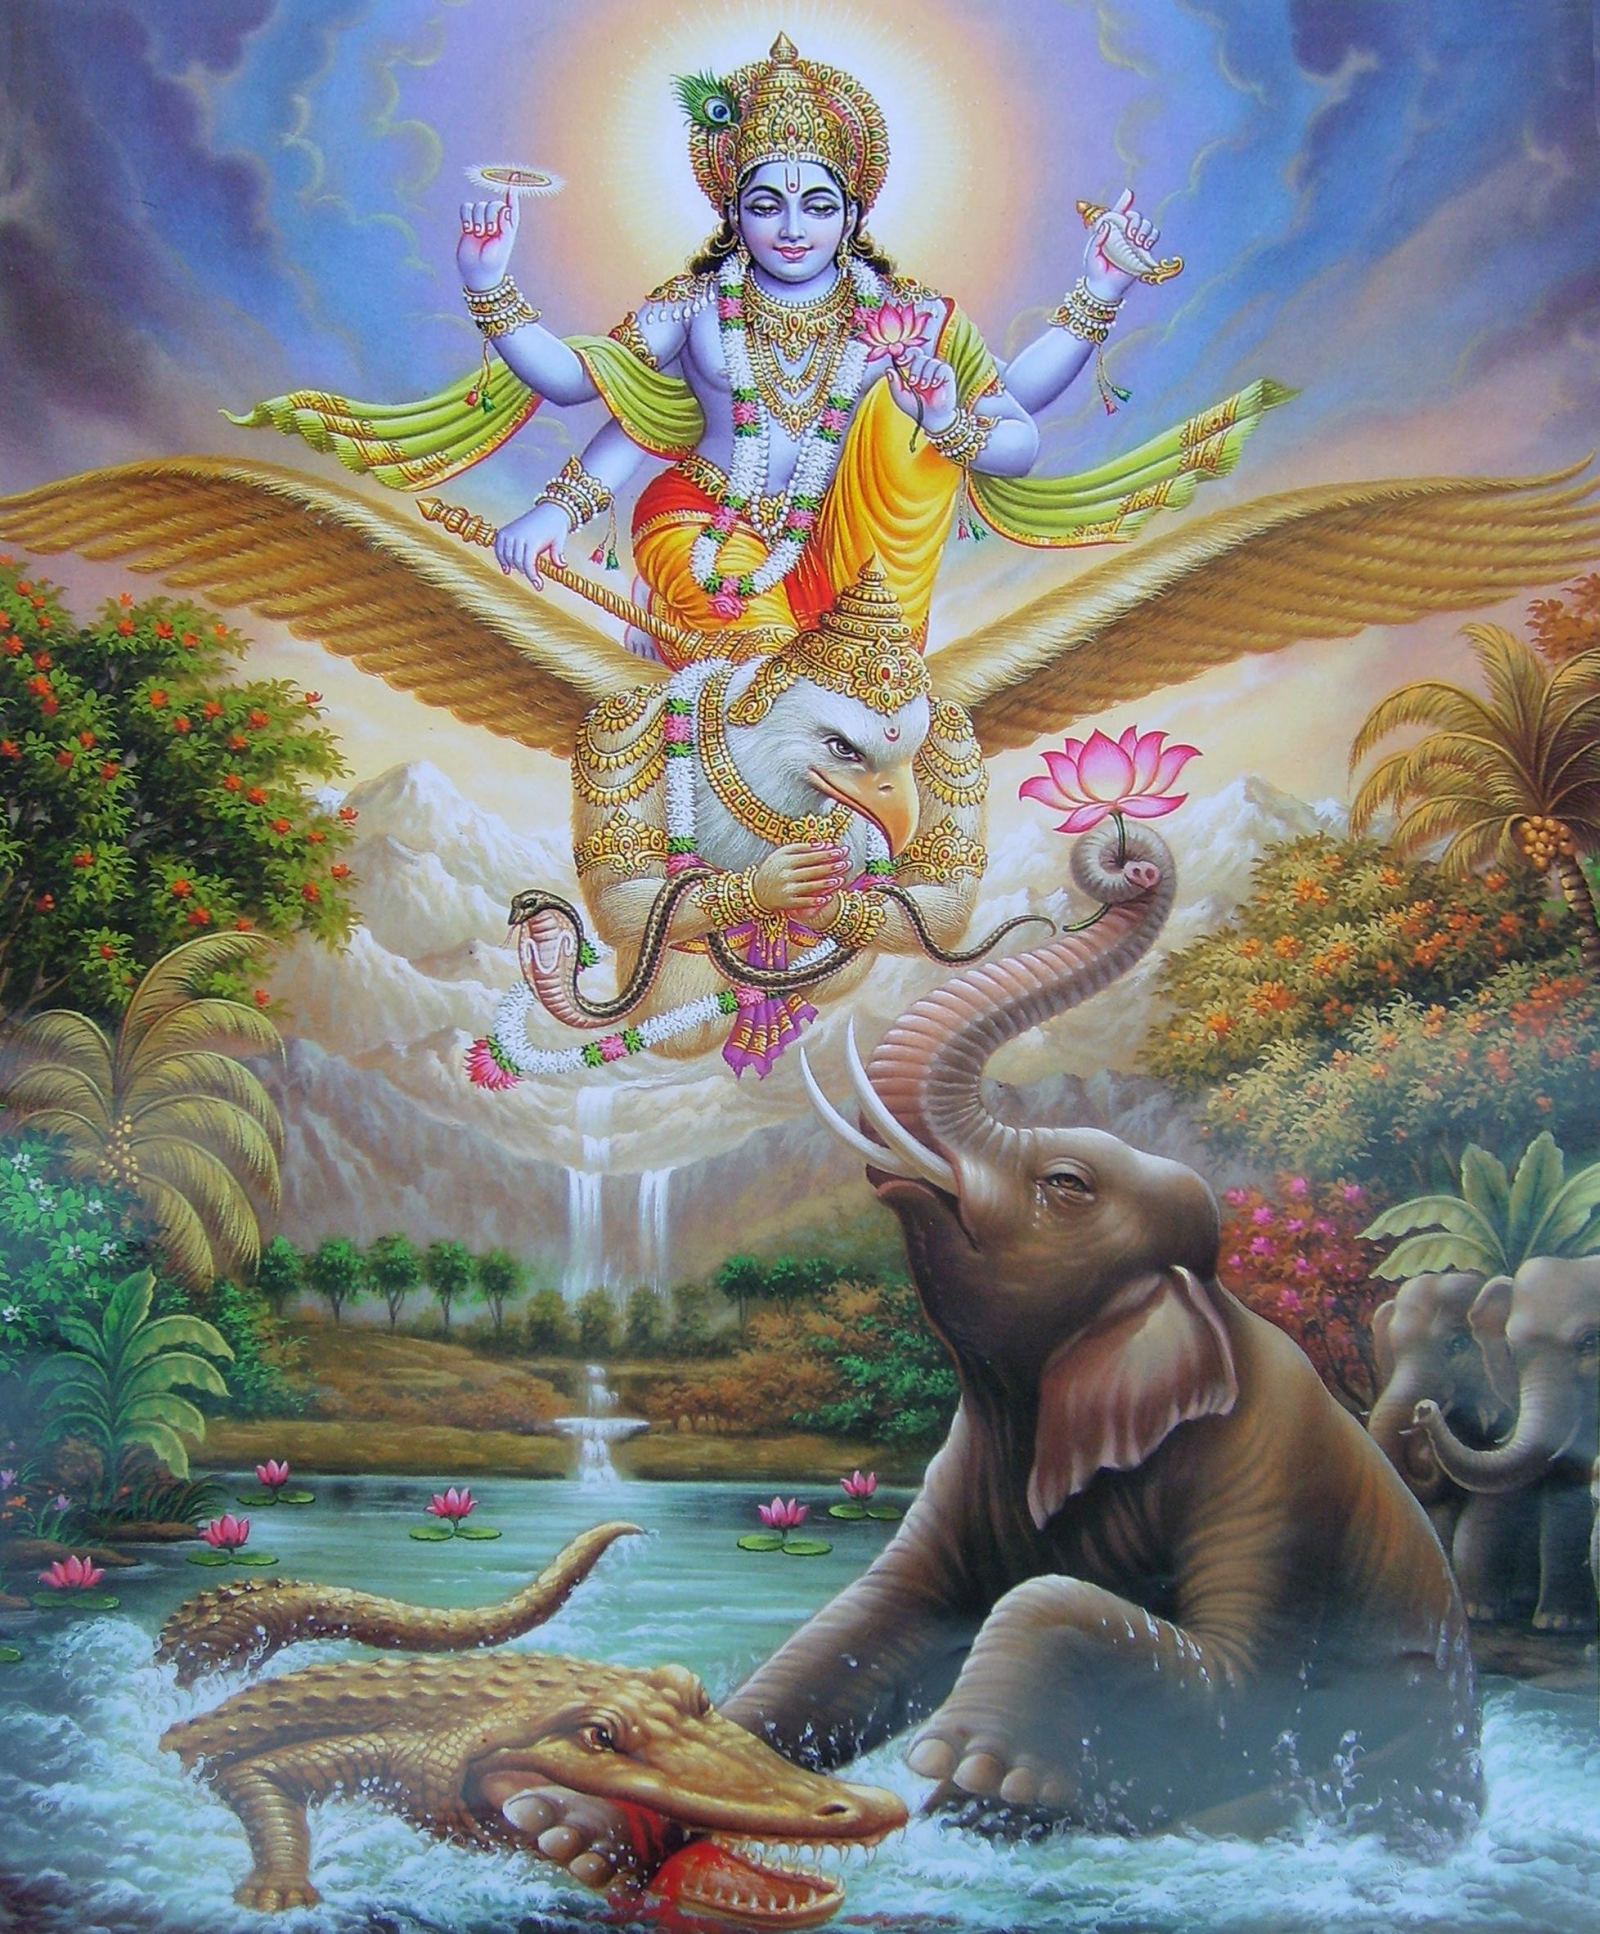 Vishnu Wallpaper. Vishnu Wallpaper, Hindu Vishnu Wallpaper and Vishnu Wallpaper 3D